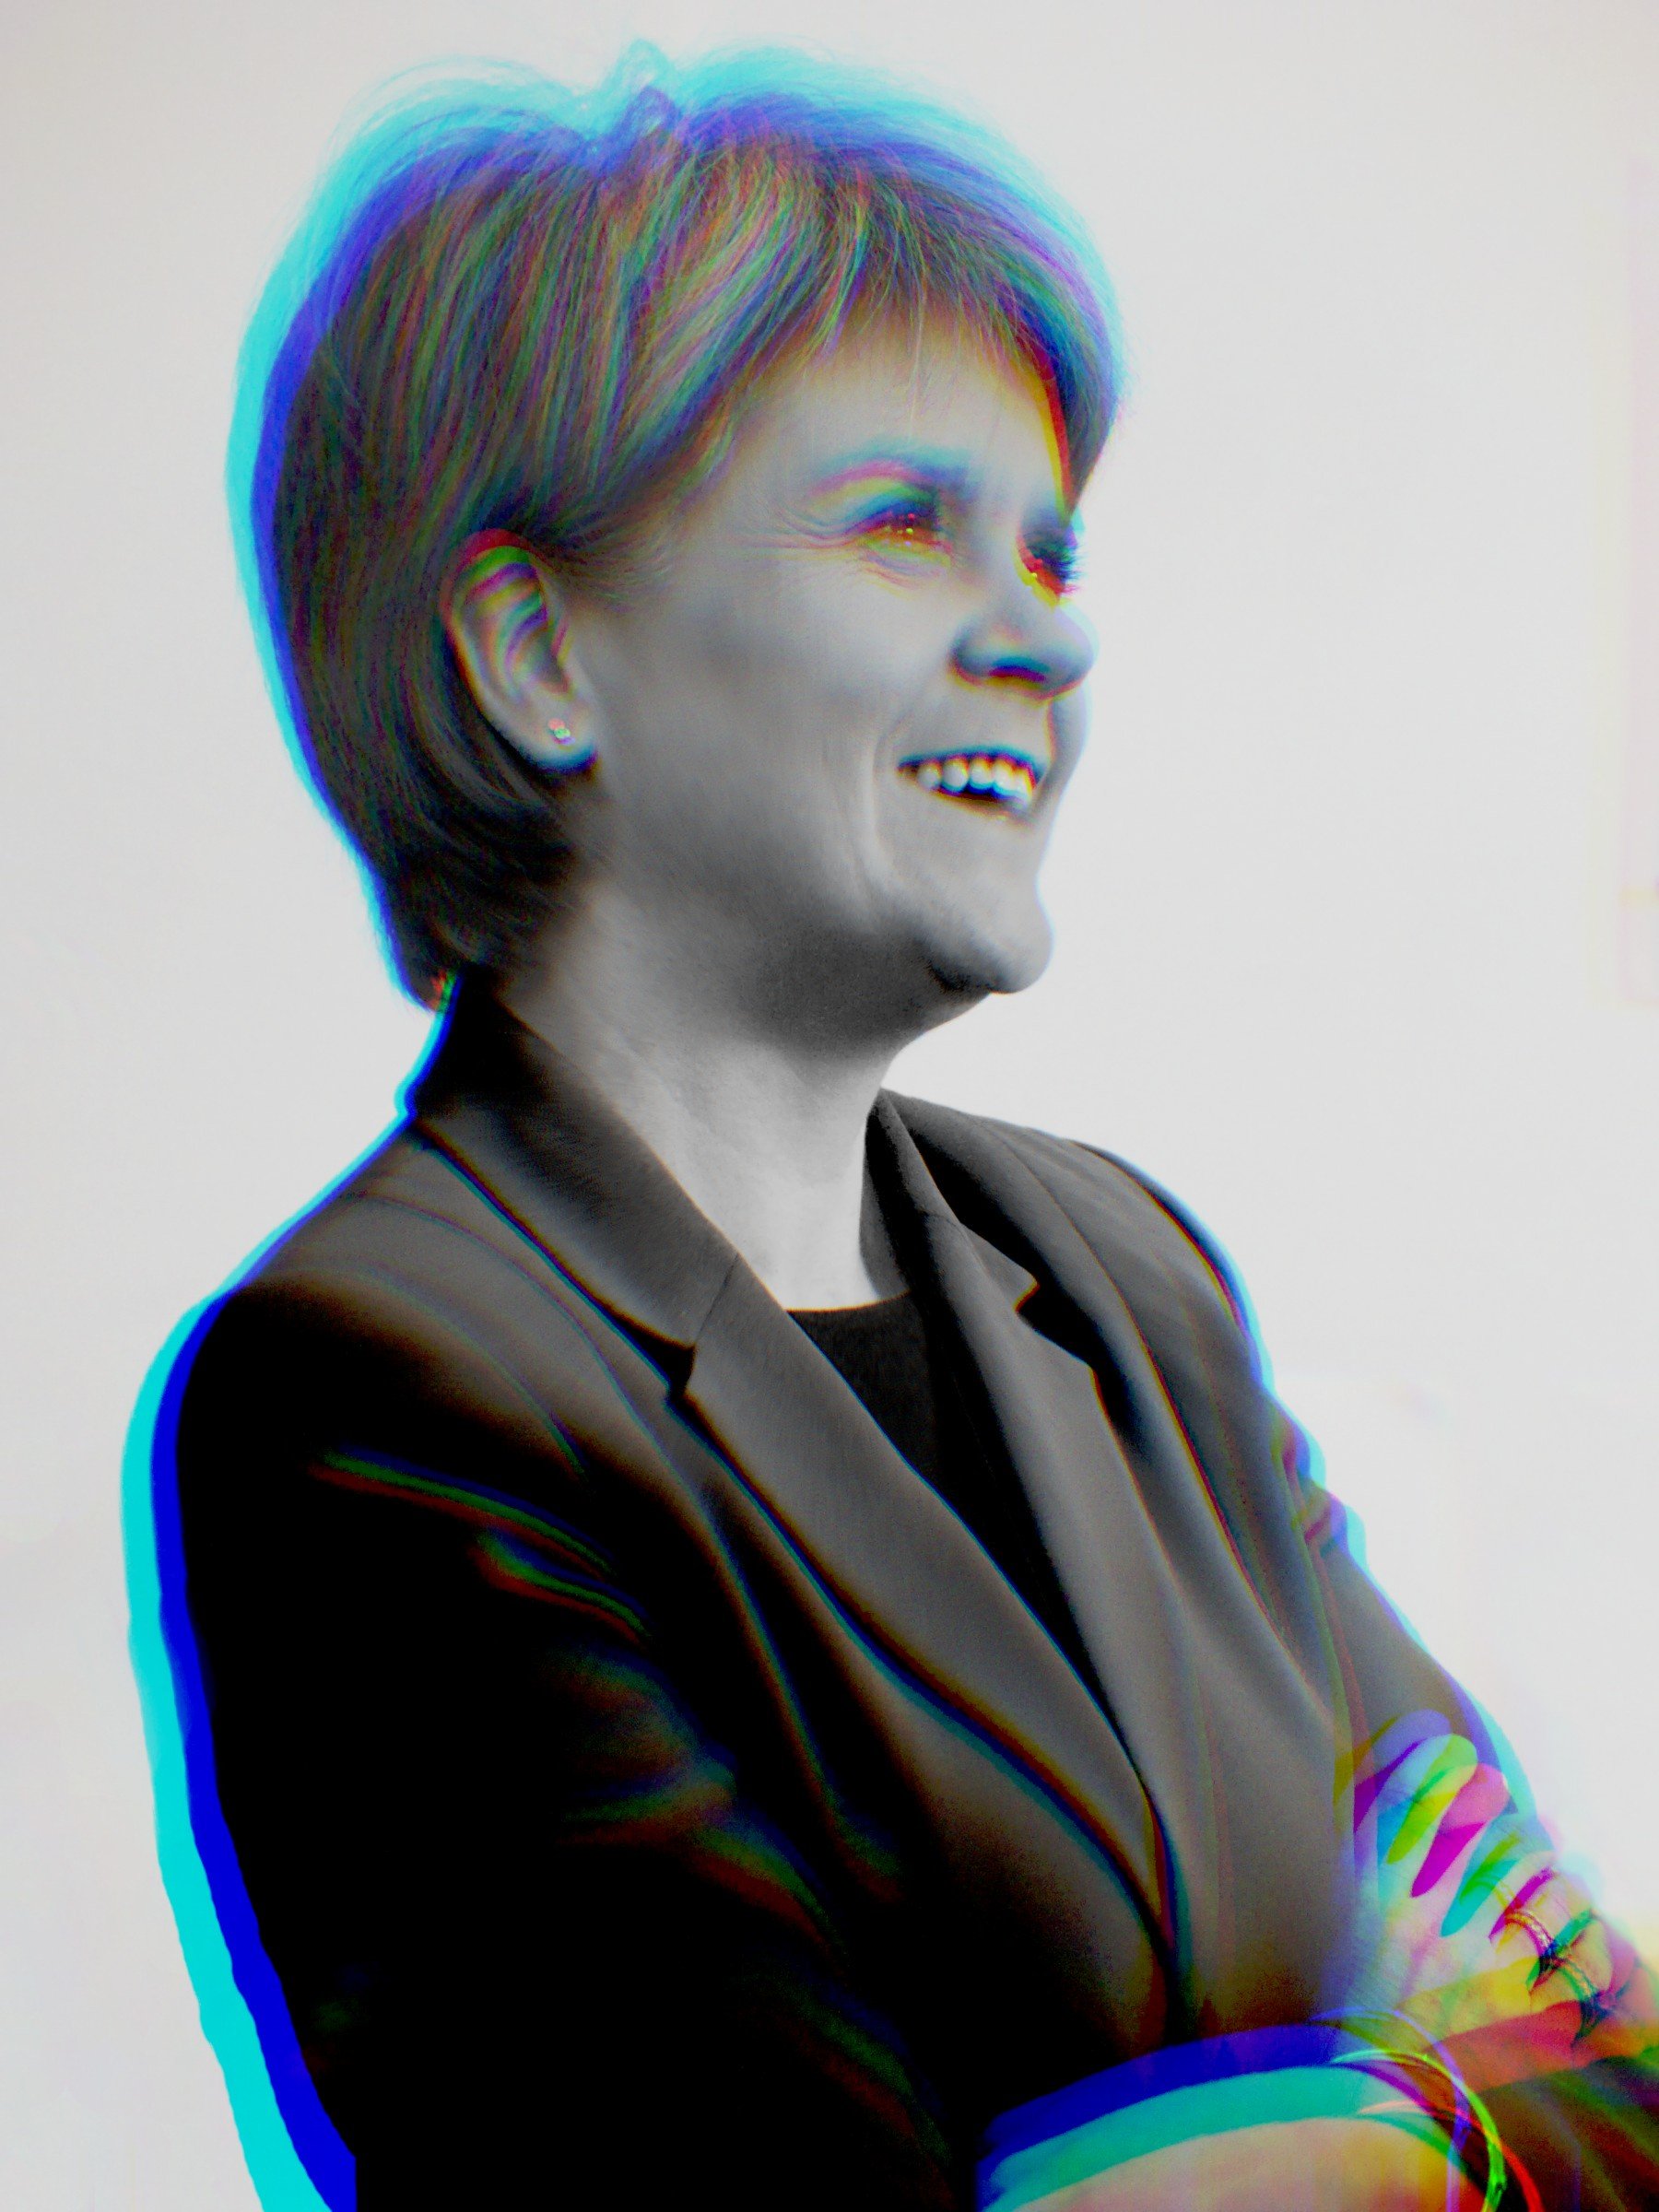 'Financial Times': Escocia tiene derecho a un segundo referéndum